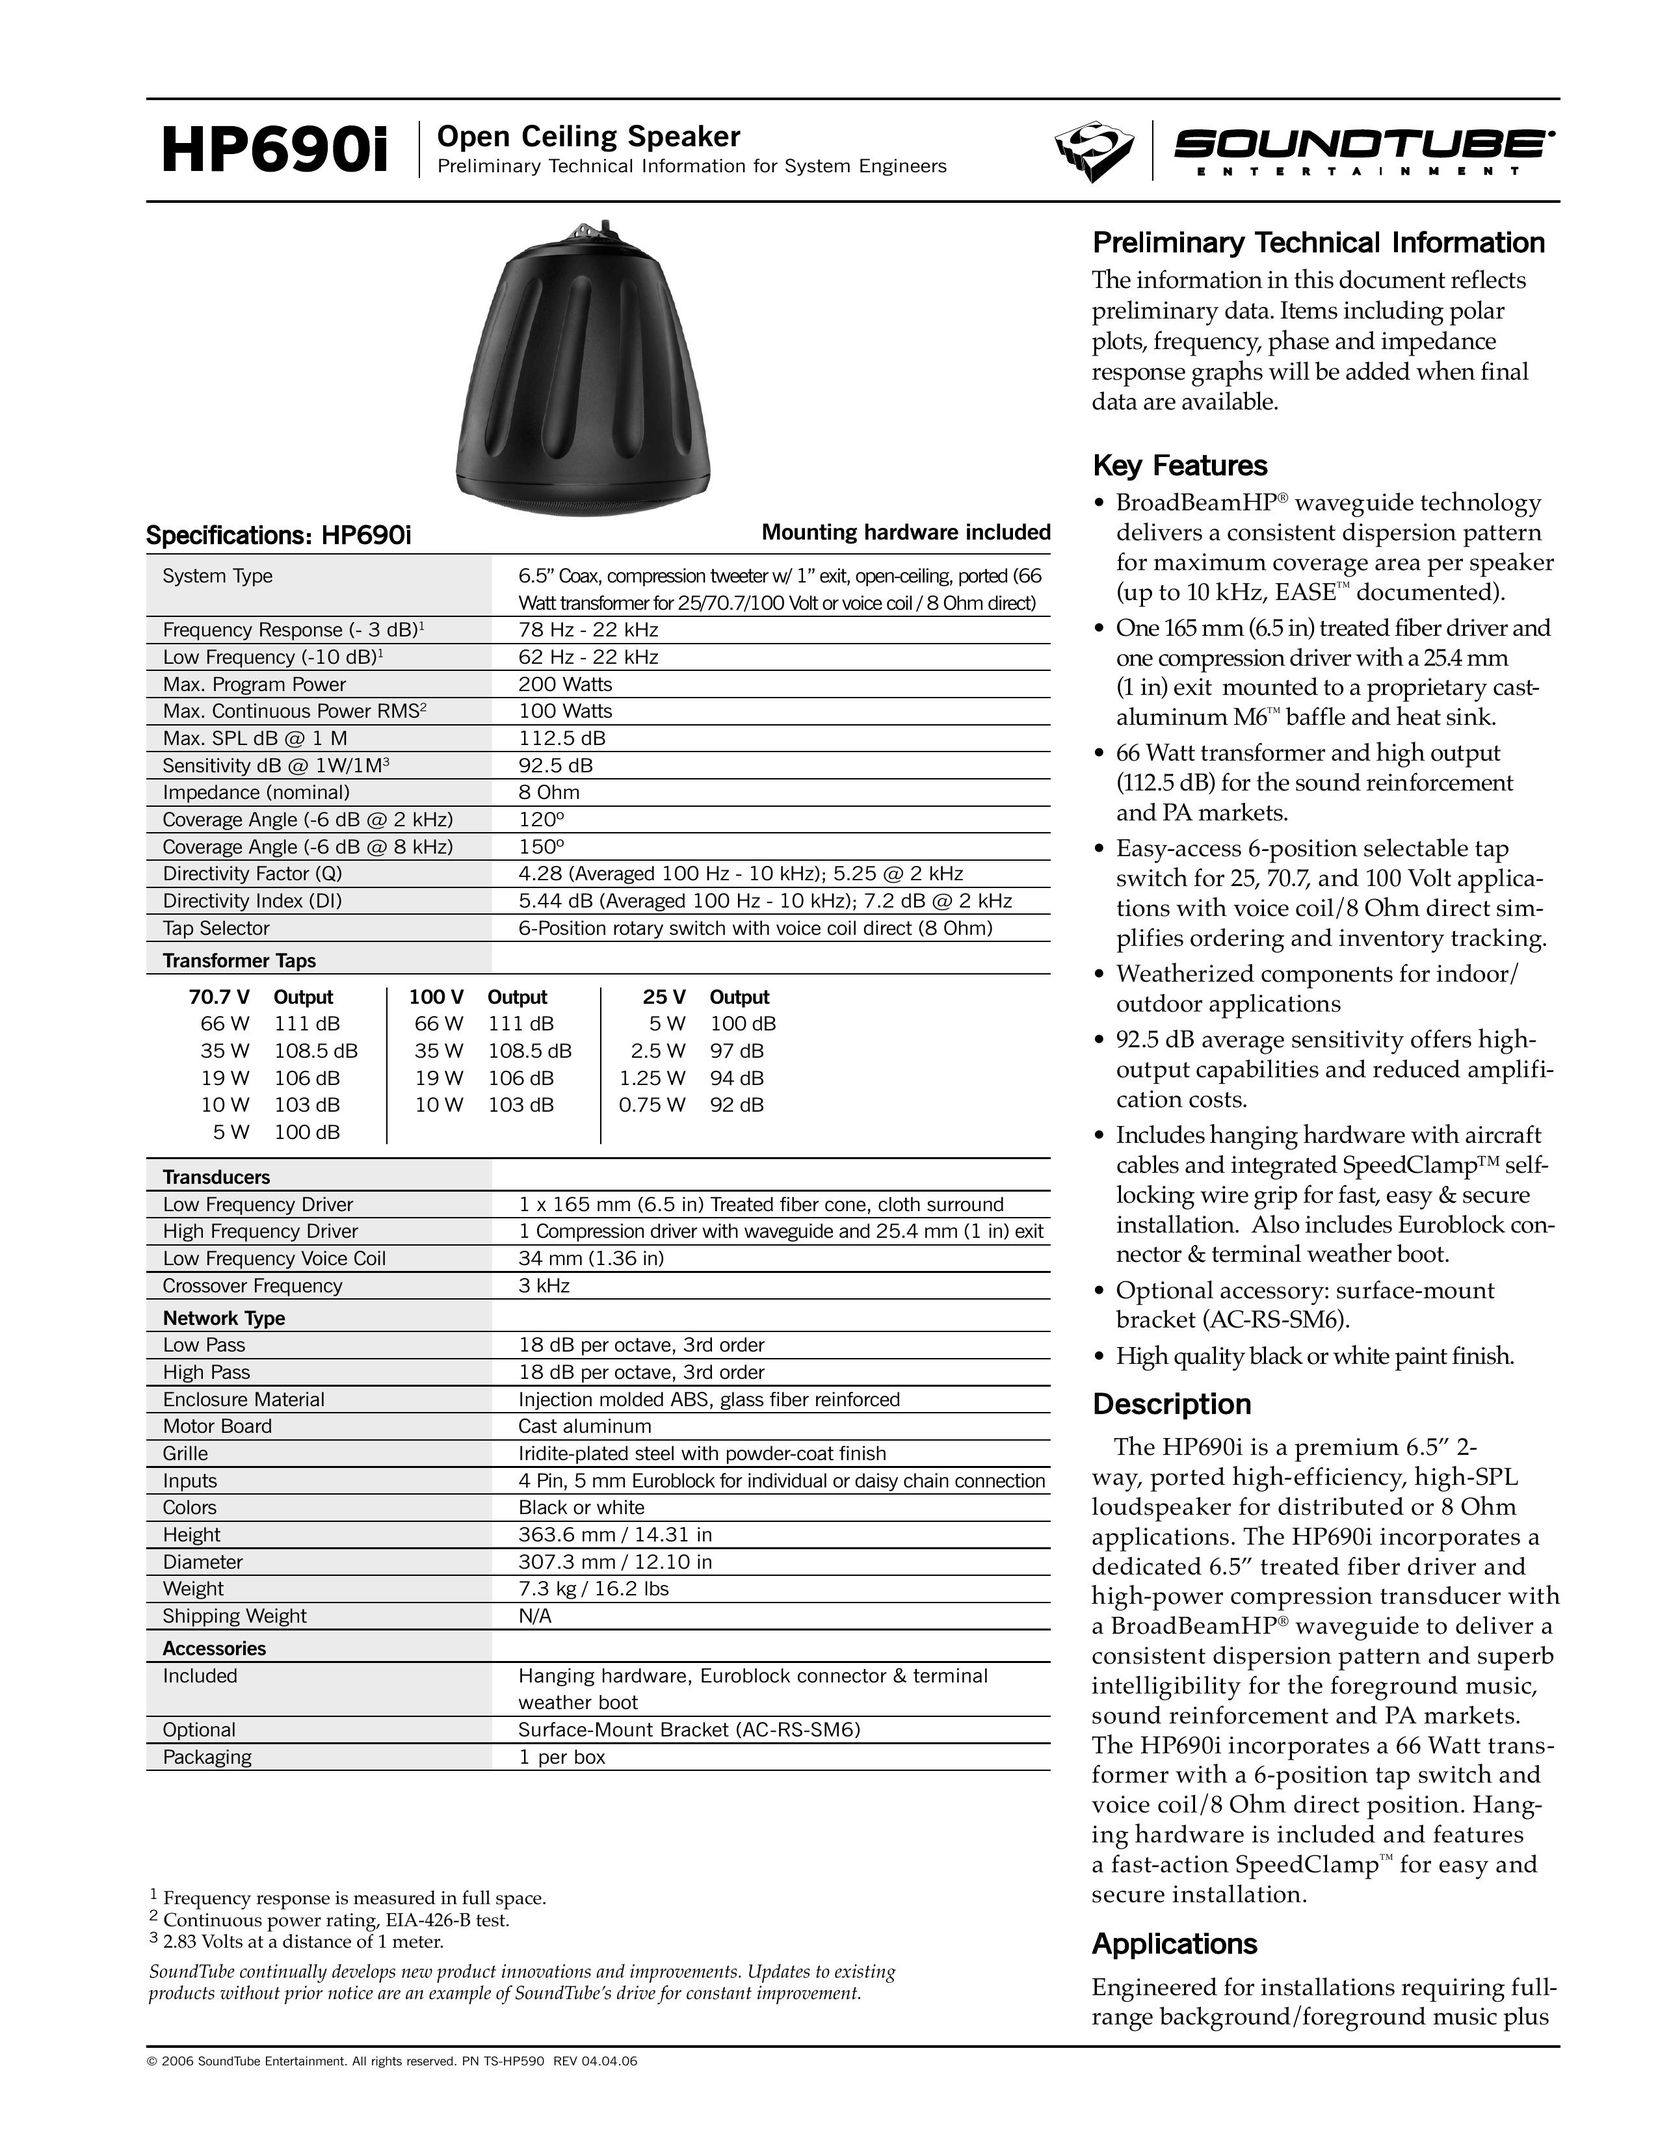 Phase Technology HP690i Speaker User Manual